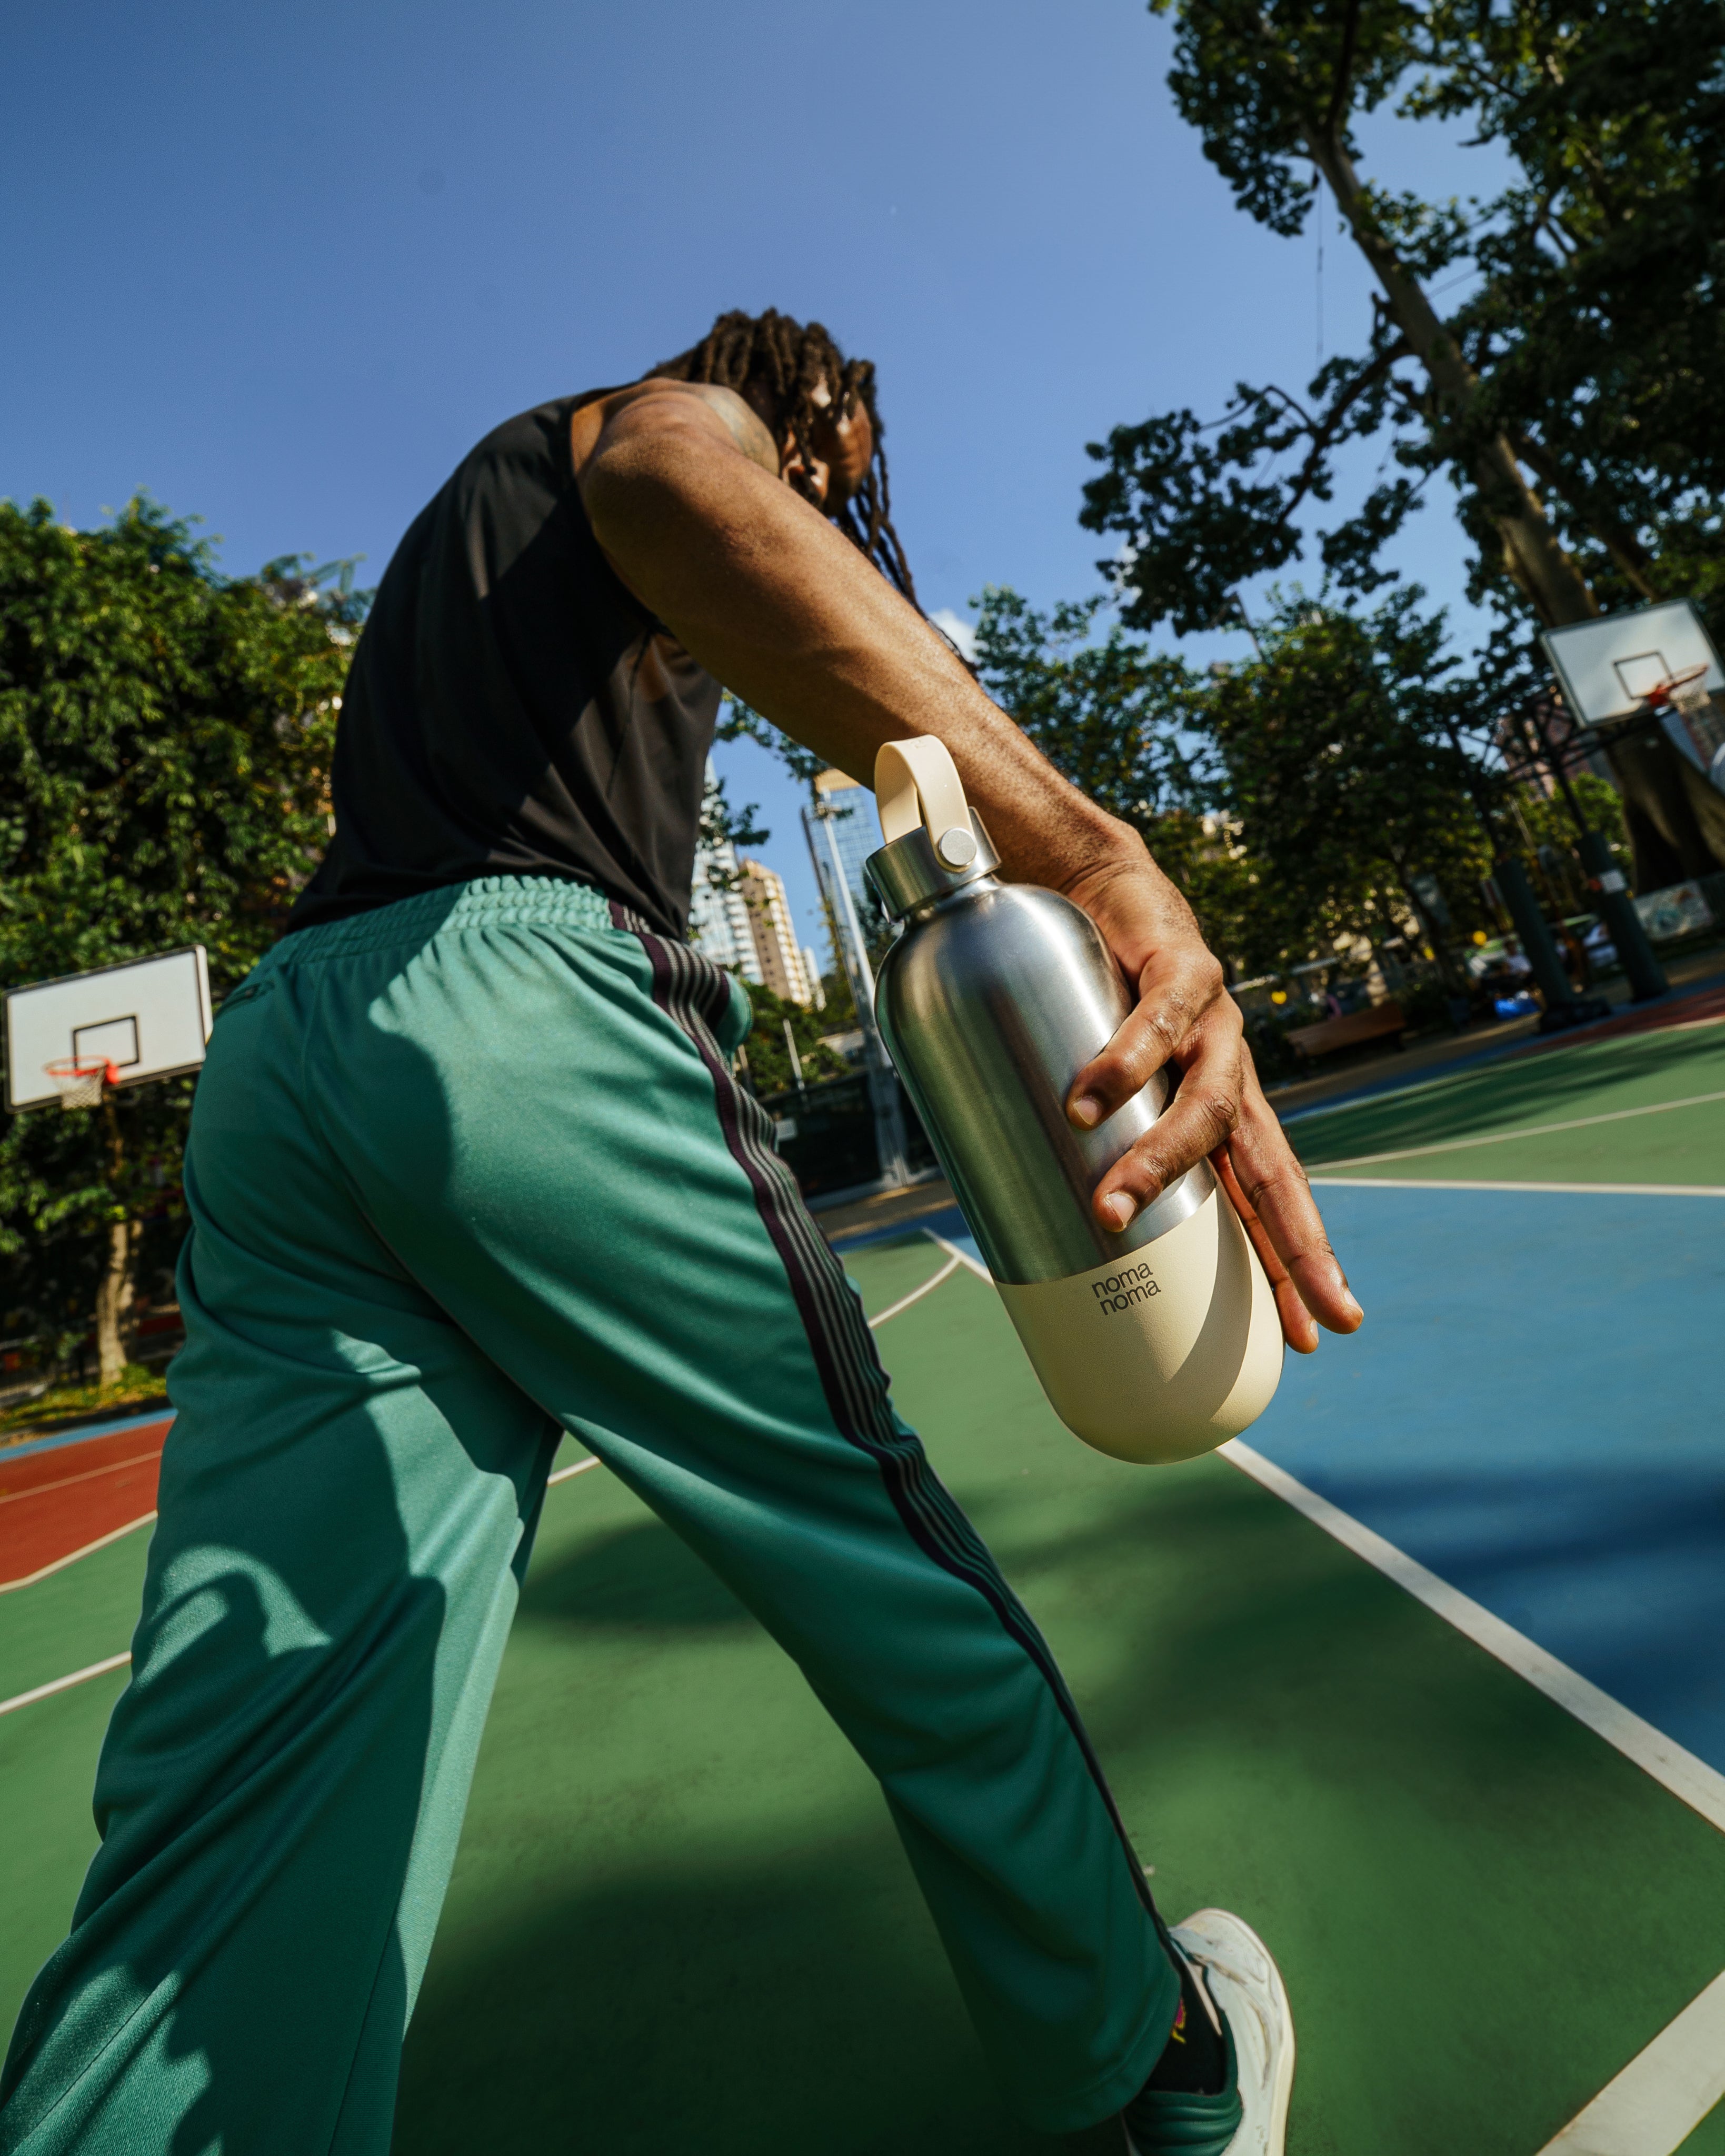 Kris spielt eine Runde Basketball in Hong Kong mit der beigen Thermosflasche von noma noma in der Hand